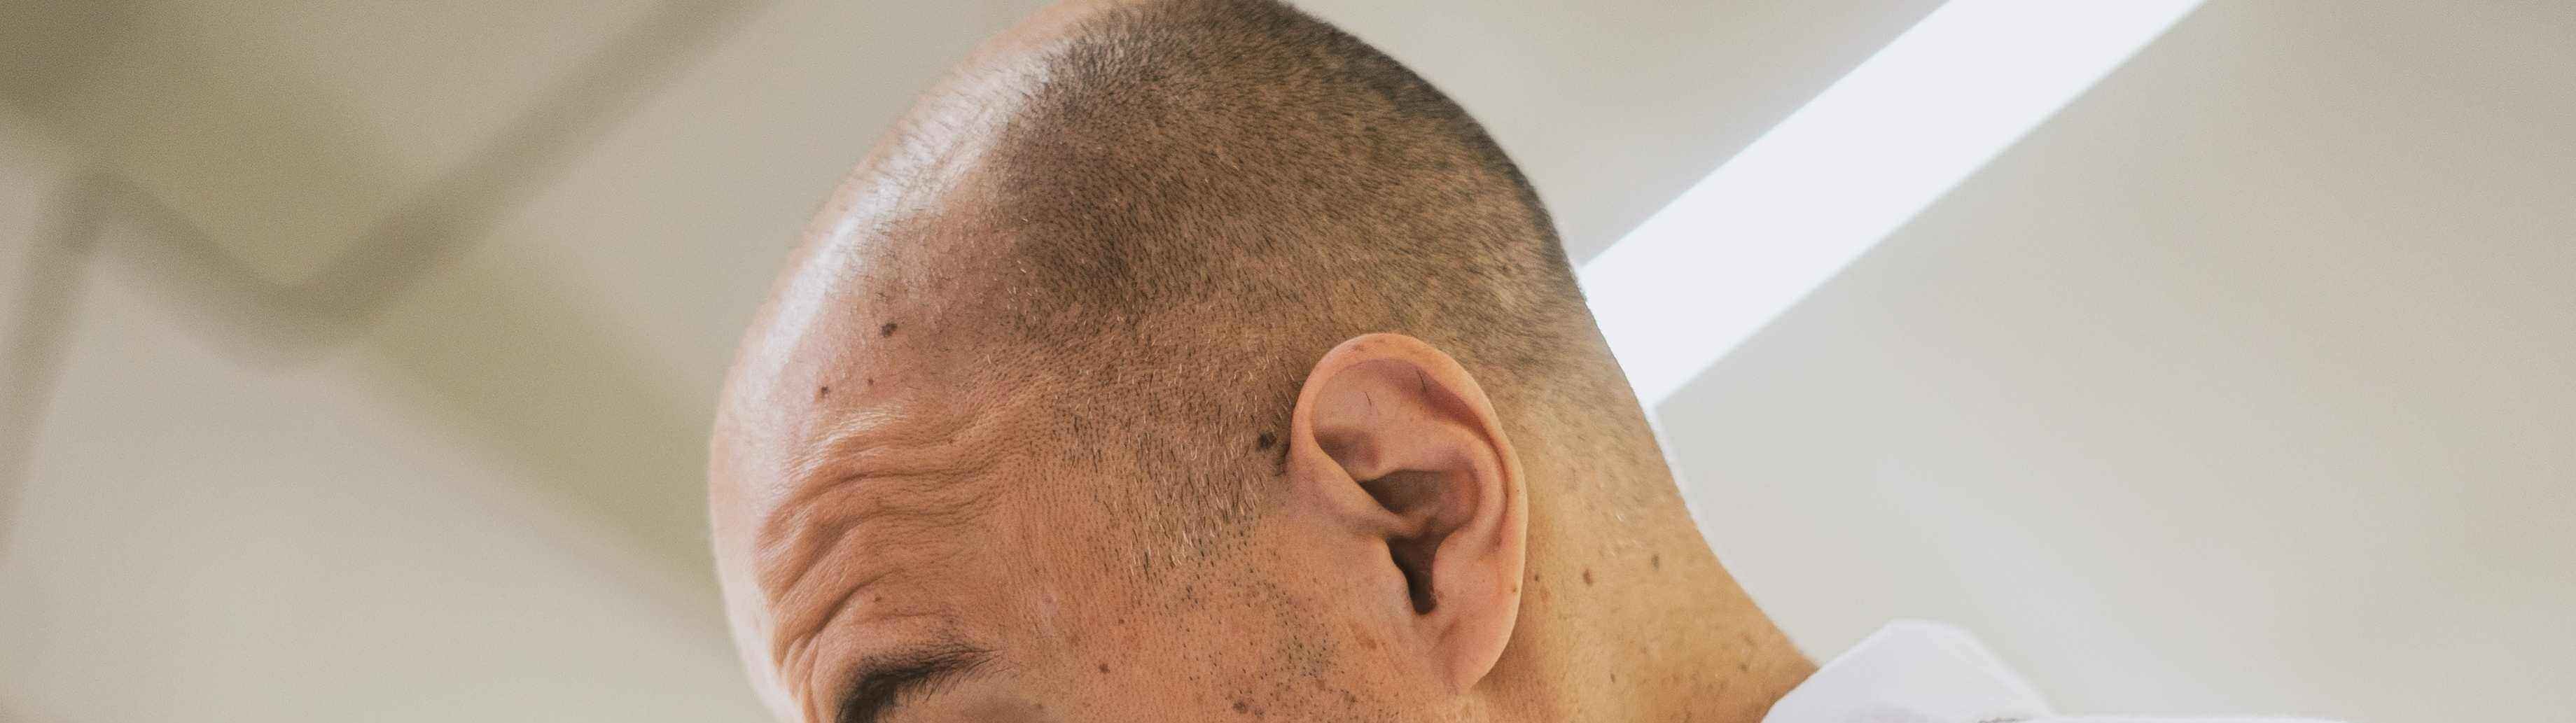 
Nuevo avance contra la alopecia: consiguen cultivar pelo en un laboratorio
